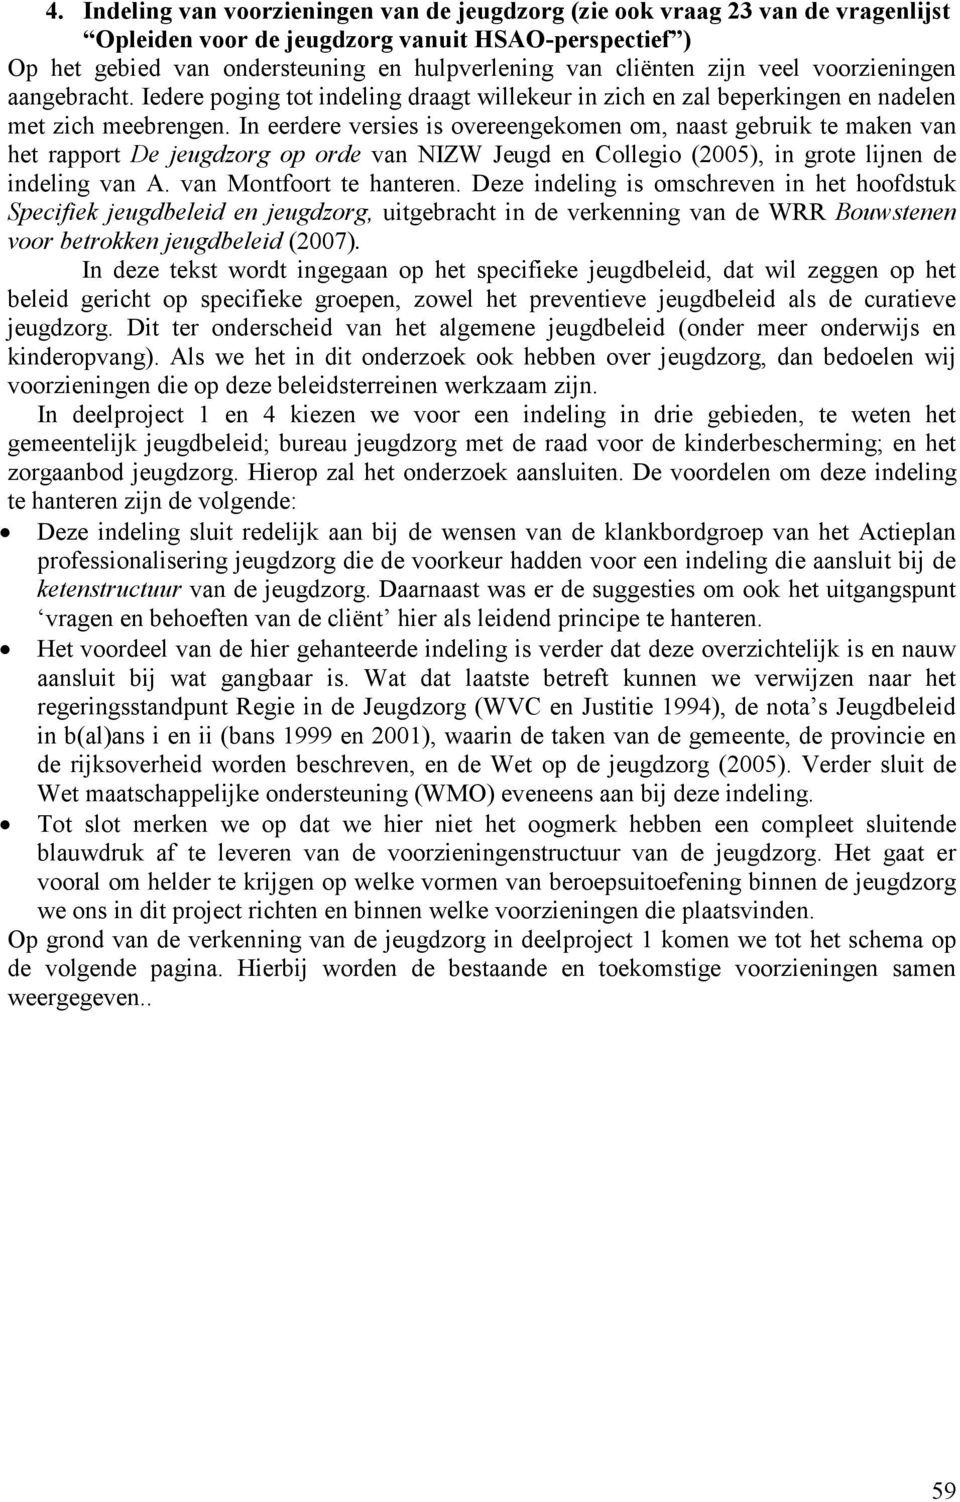 In eerdere versies is overeengekomen om, naast gebruik te maken van het rapport De jeugdzorg op orde van NIZW Jeugd en Collegio (2005), in grote lijnen de indeling van A. van Montfoort te hanteren.